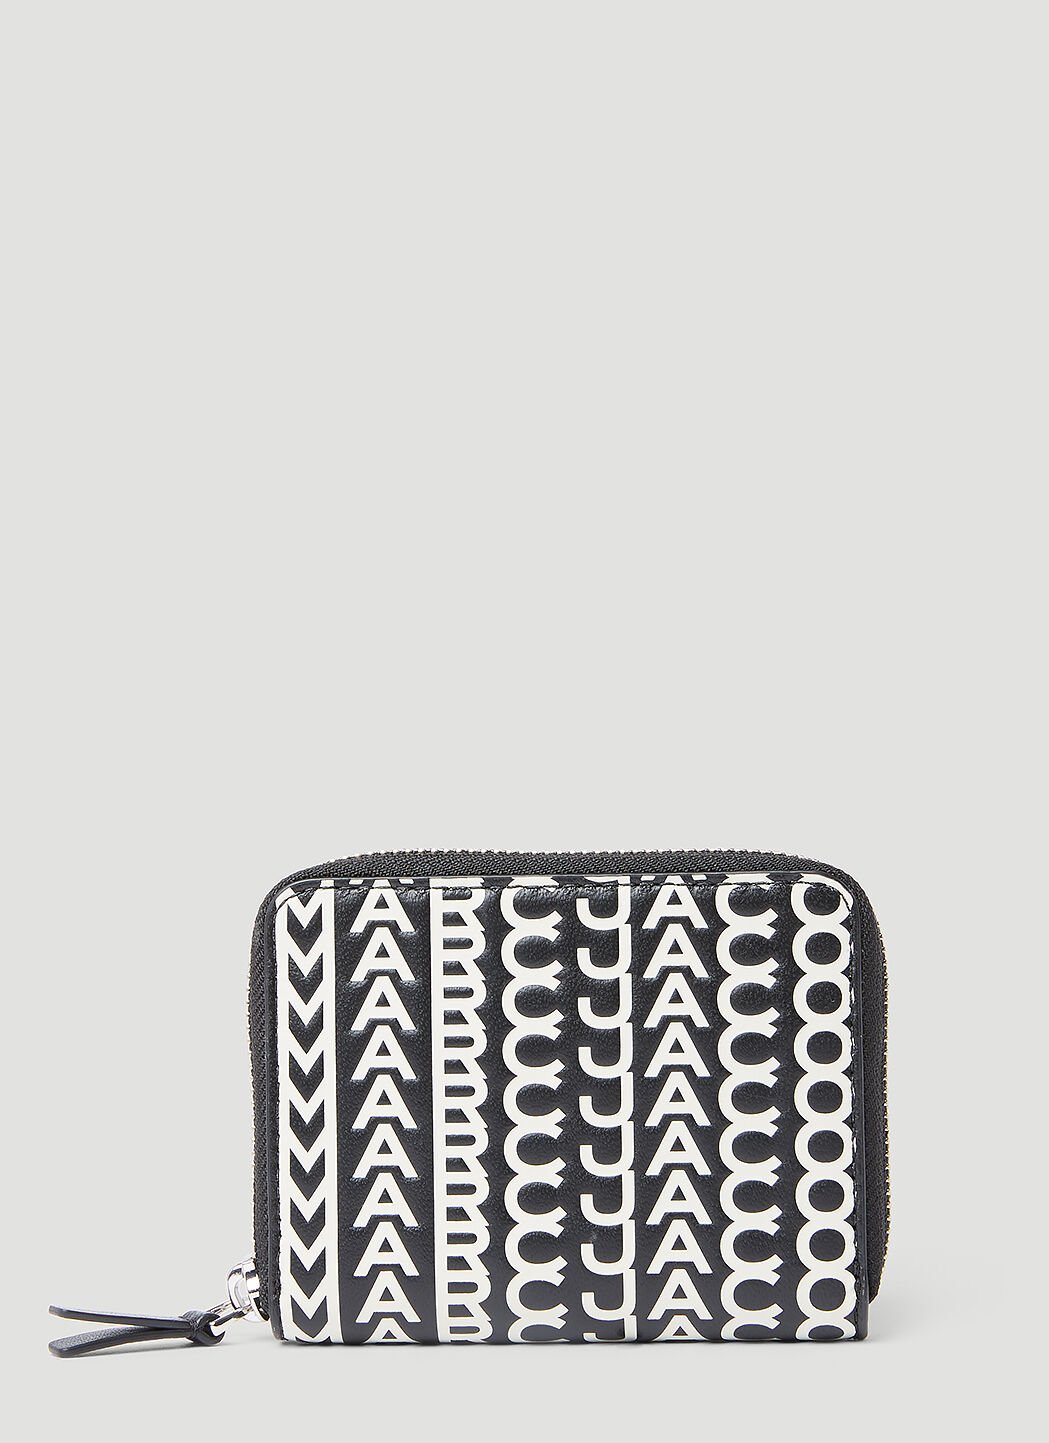 Marc Jacobs 字母花押皮革全拉链钱包 黑 mcj0255033